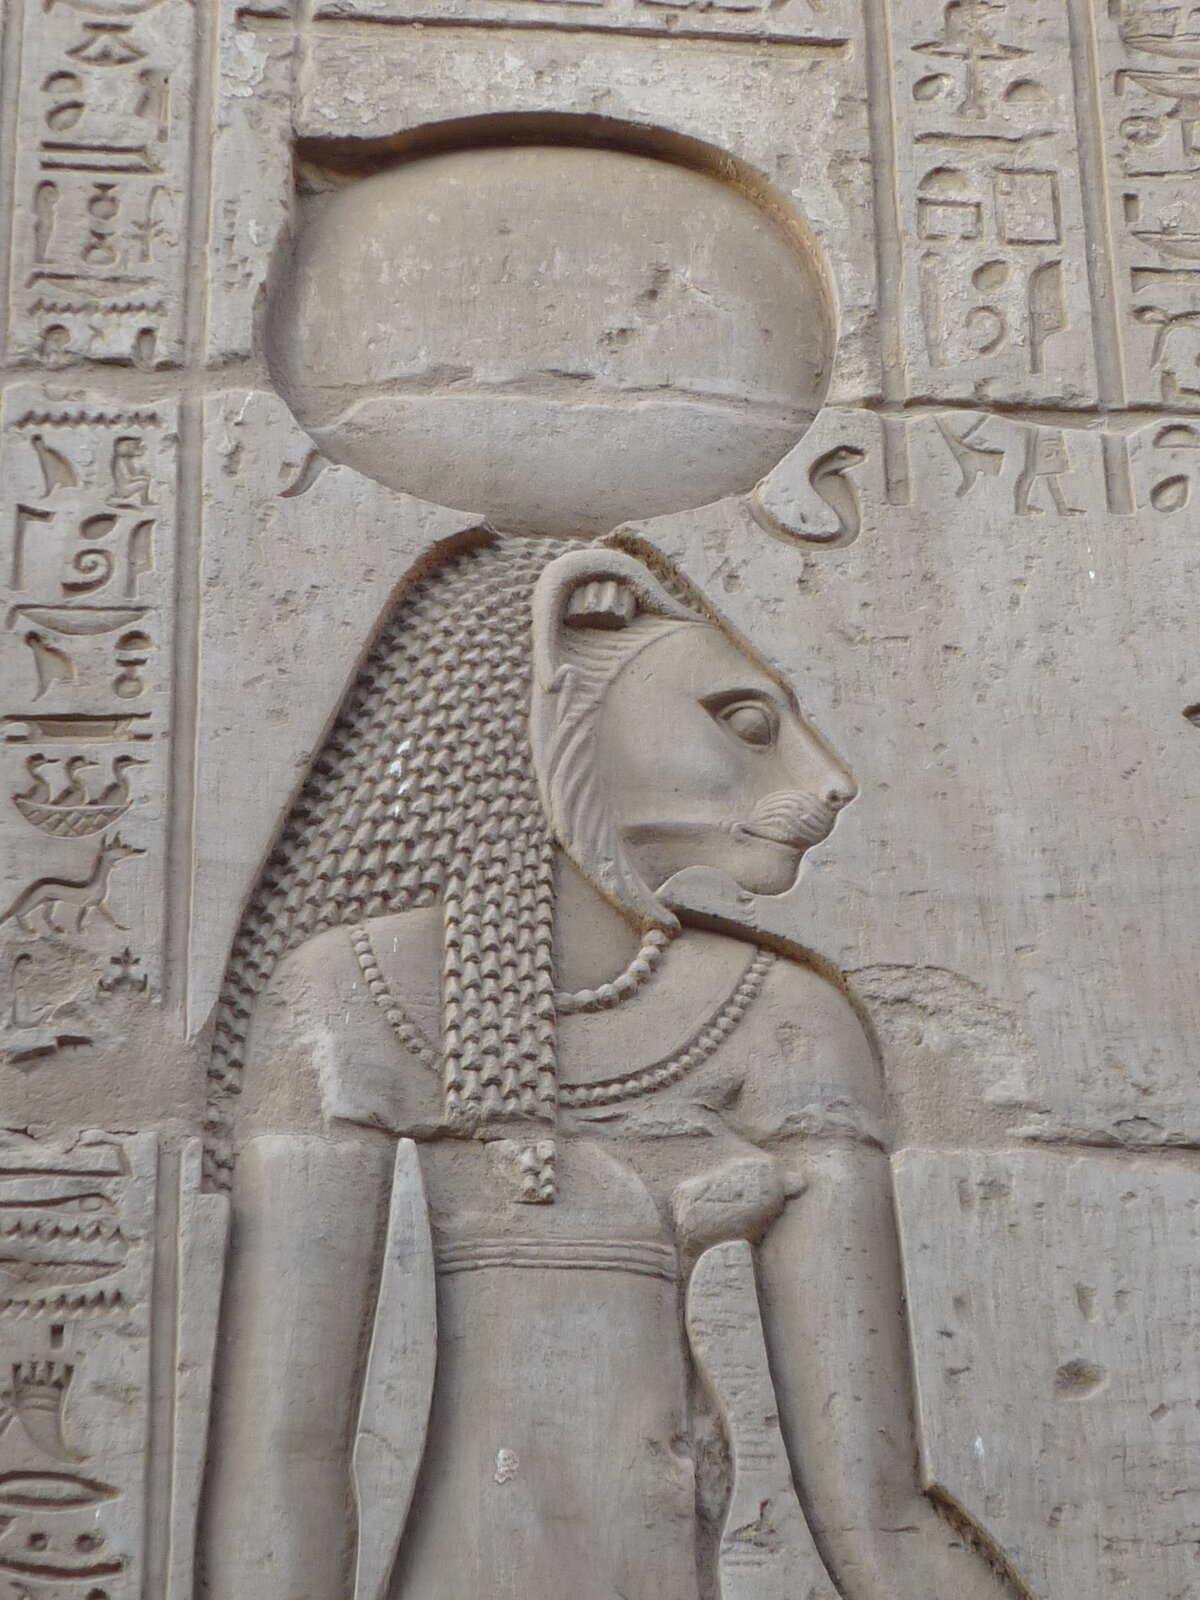 Ilustracja przedstawia fragment reliefu ze ściany świątyni w Kom Obo, w Egipcie. Na fotografii widać Horusa z głową lwa. Jest ubrany w dopasowaną tunikę, na szyi ma korale. Na ścianie znajduje się tekst, sporządzony pismem egipskim.